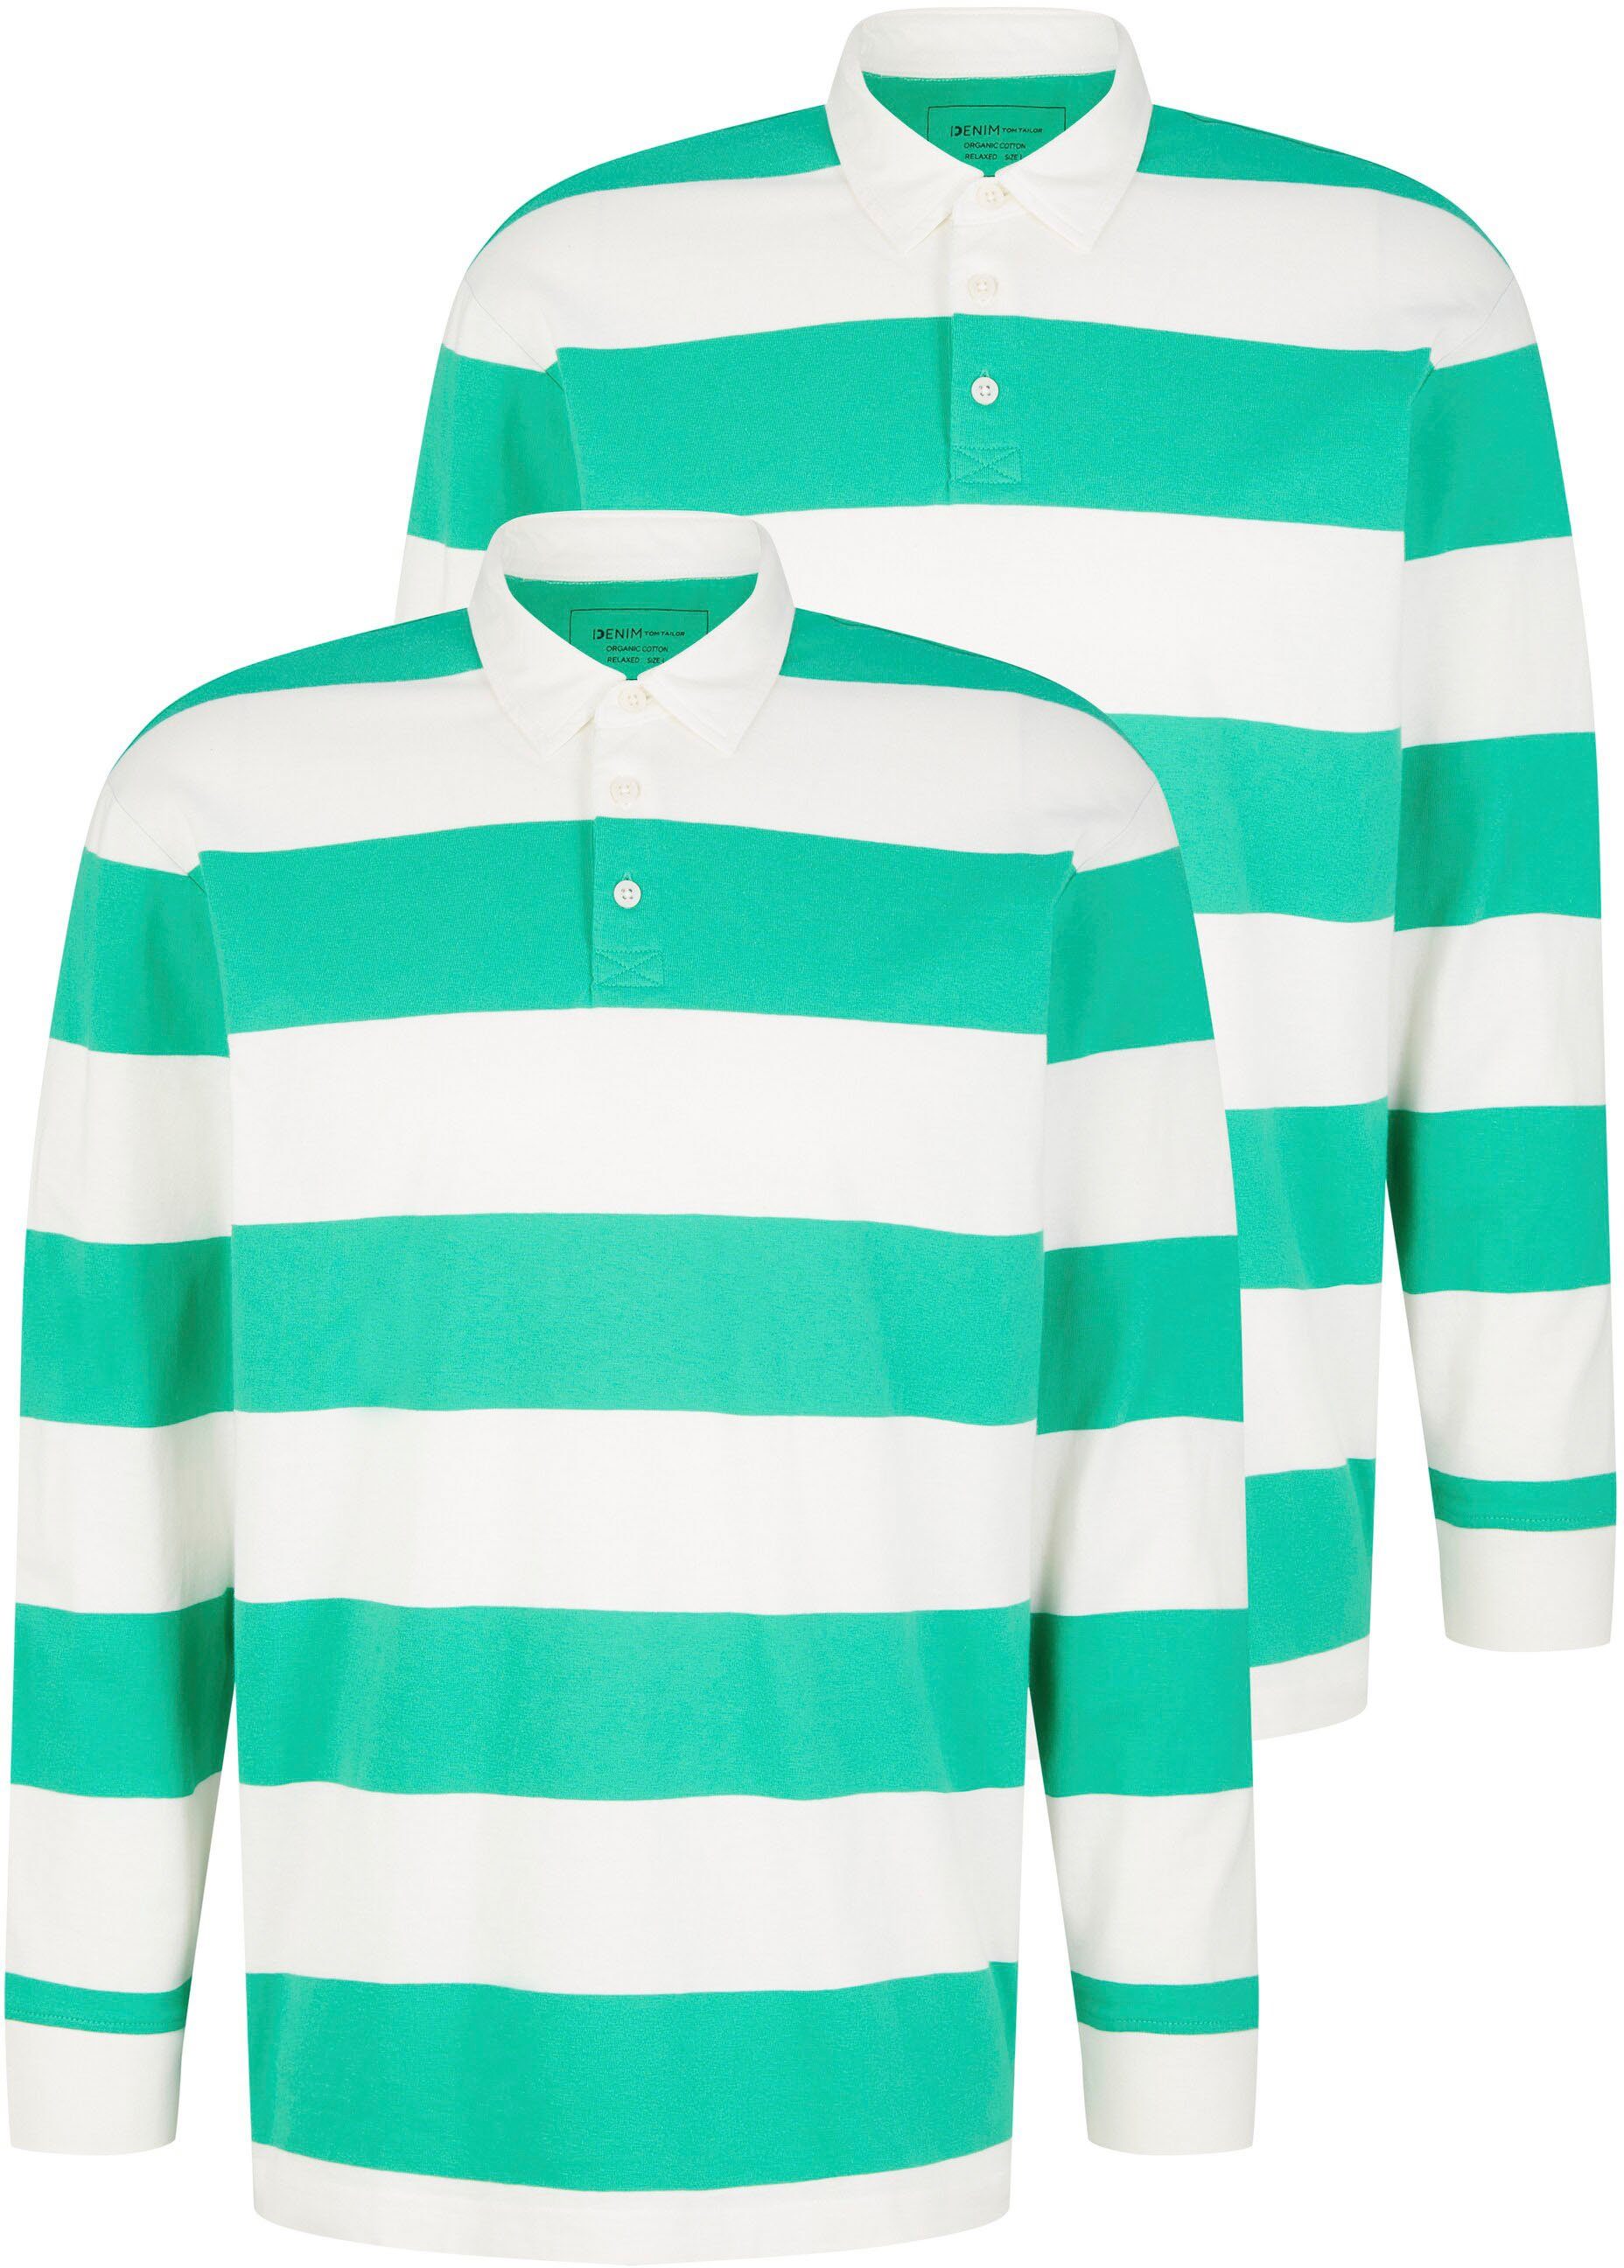 TOM TAILOR Denim Langarm-Poloshirt grün-weiß | Poloshirts